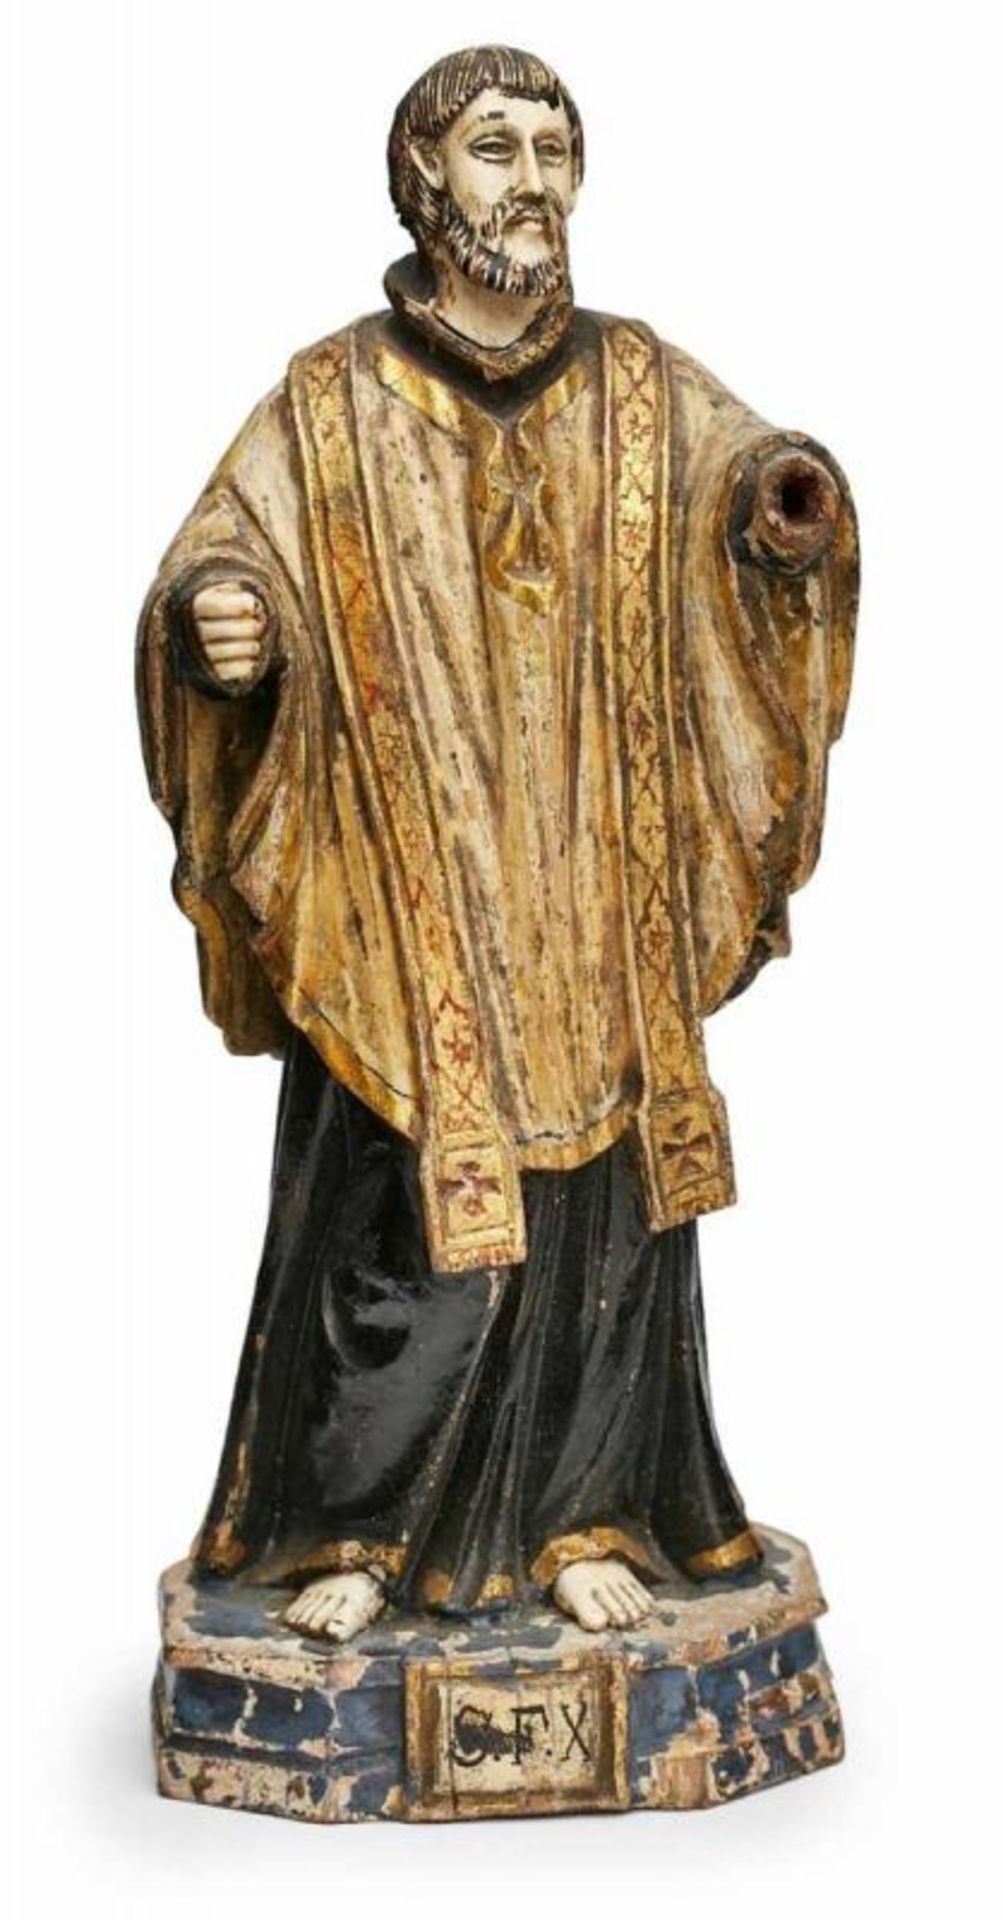 Kl. Figur "Heiliger", südländisch 19. Jh. Holz, vollrd. geschnitzt, farbig u. partiell gold - Bild 2 aus 3